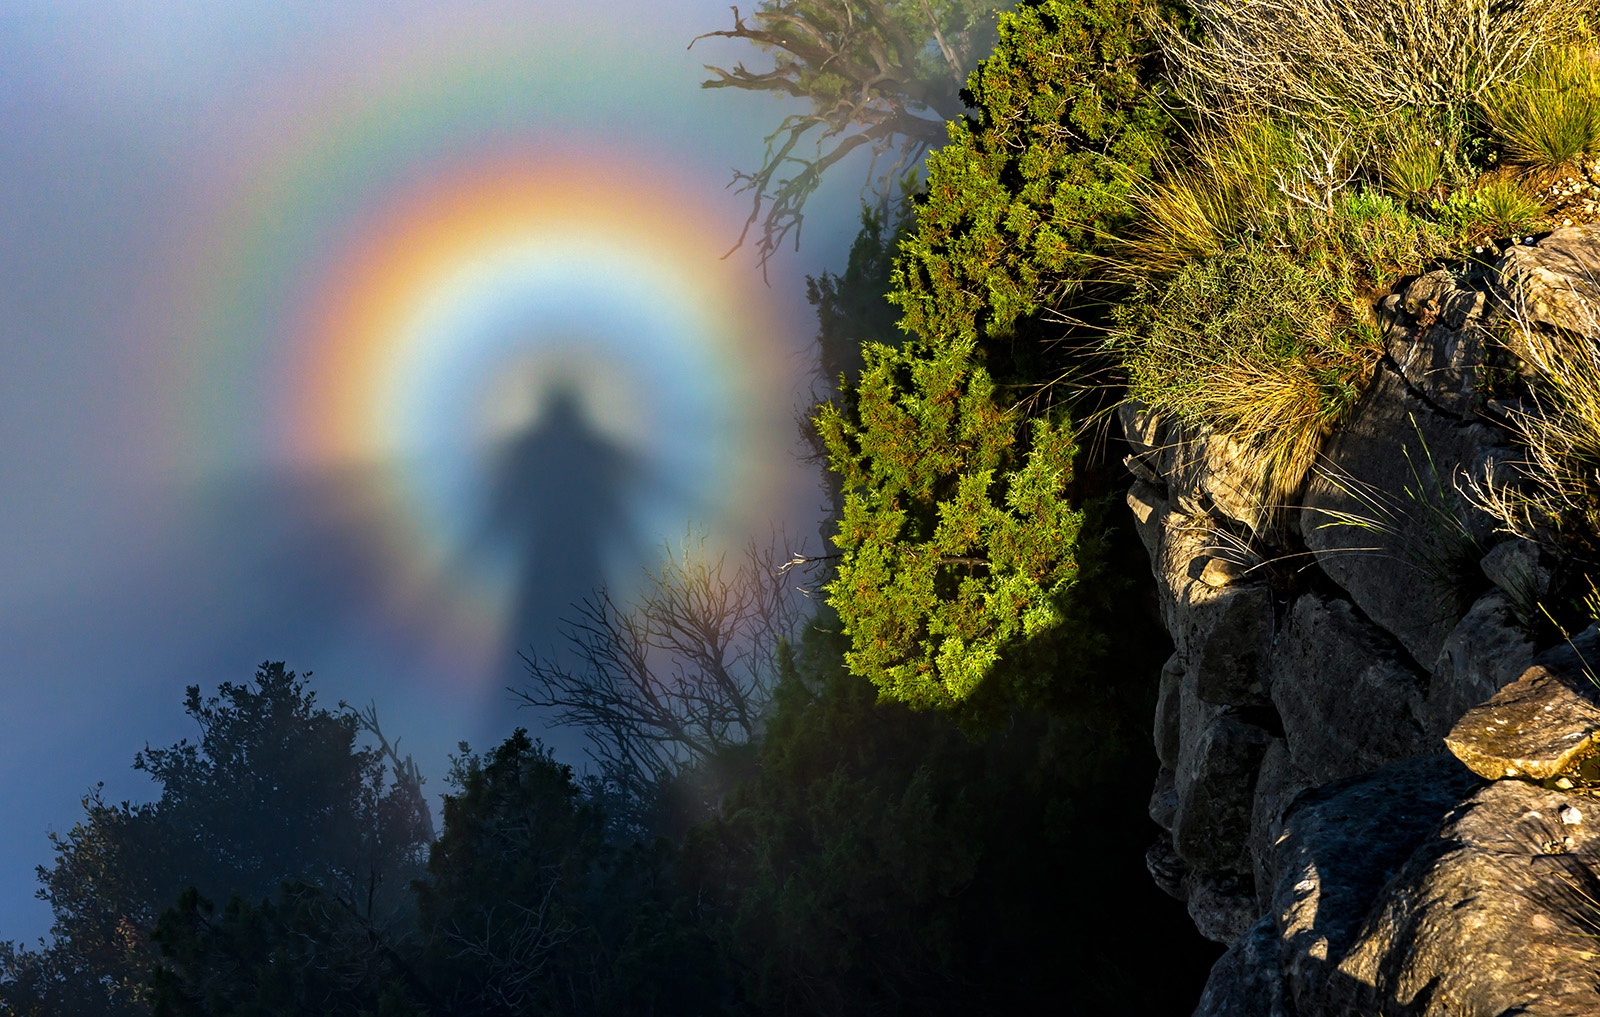 Снимок Броккенского призрака вошёл в шорт-лист конкурса метеорологического общества